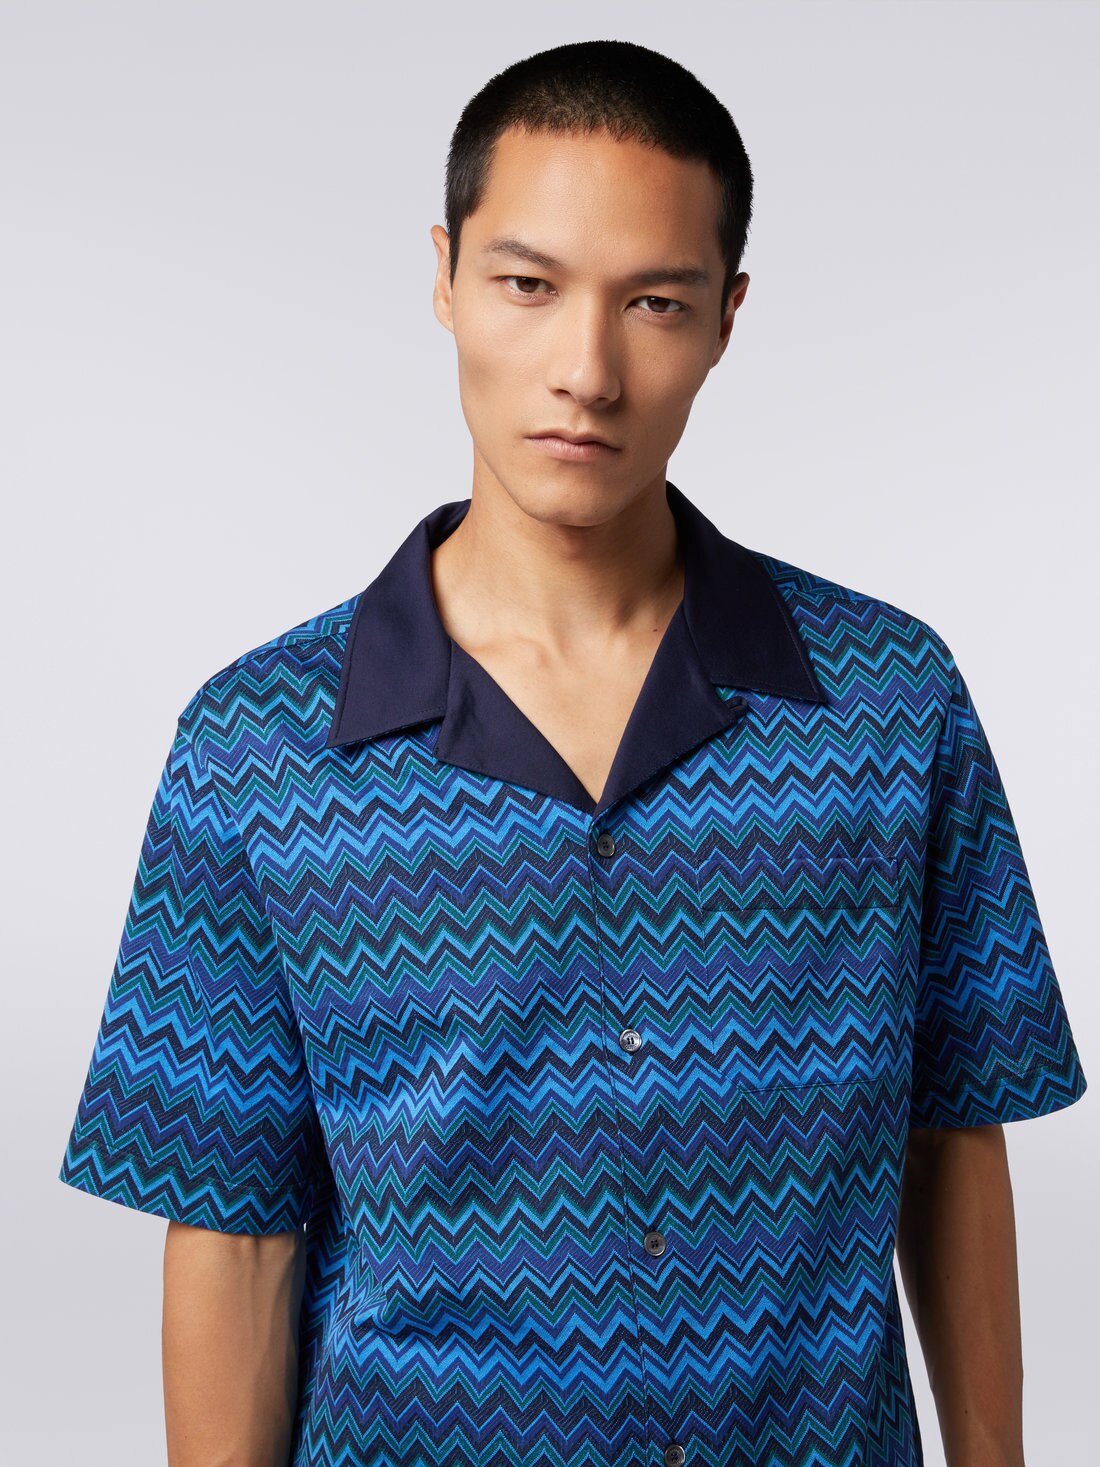 Short-sleeved jacquard knit cotton jersey shirt, Blue - US23WJ0BBJ00BFSM8Z5 - 4